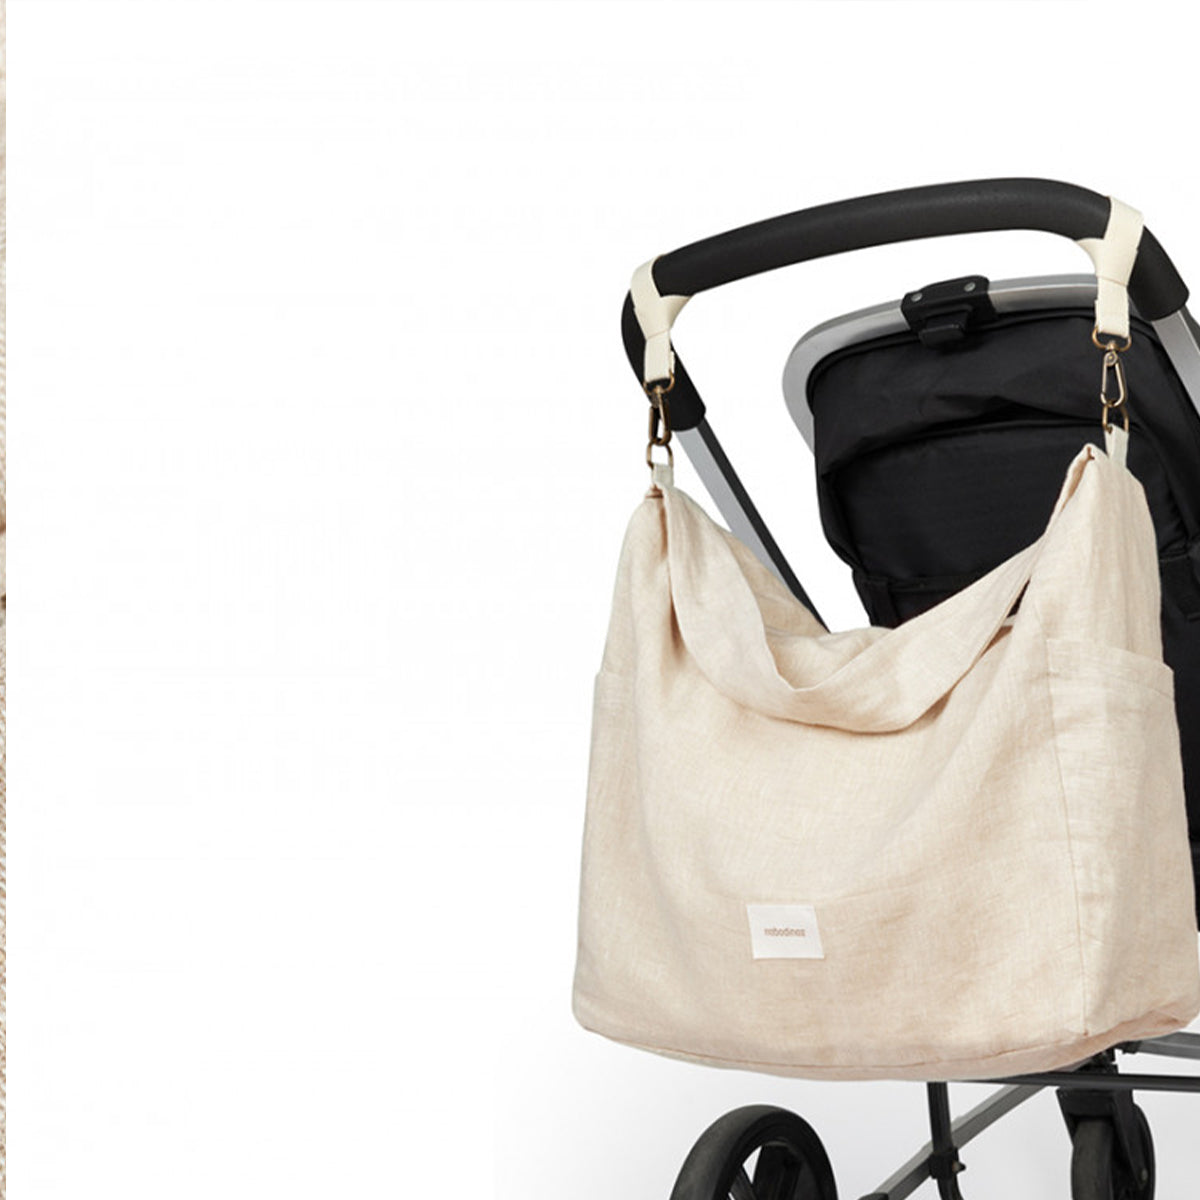 Met deze prachtige Nobodinoz lin français kinderwagentas greige kun je al je essentiële babyspulletjes overzichtelijk bij elkaar houden. De luiertas voor aan de kinderwagen is verkrijgbaar in trendy prints. VanZus